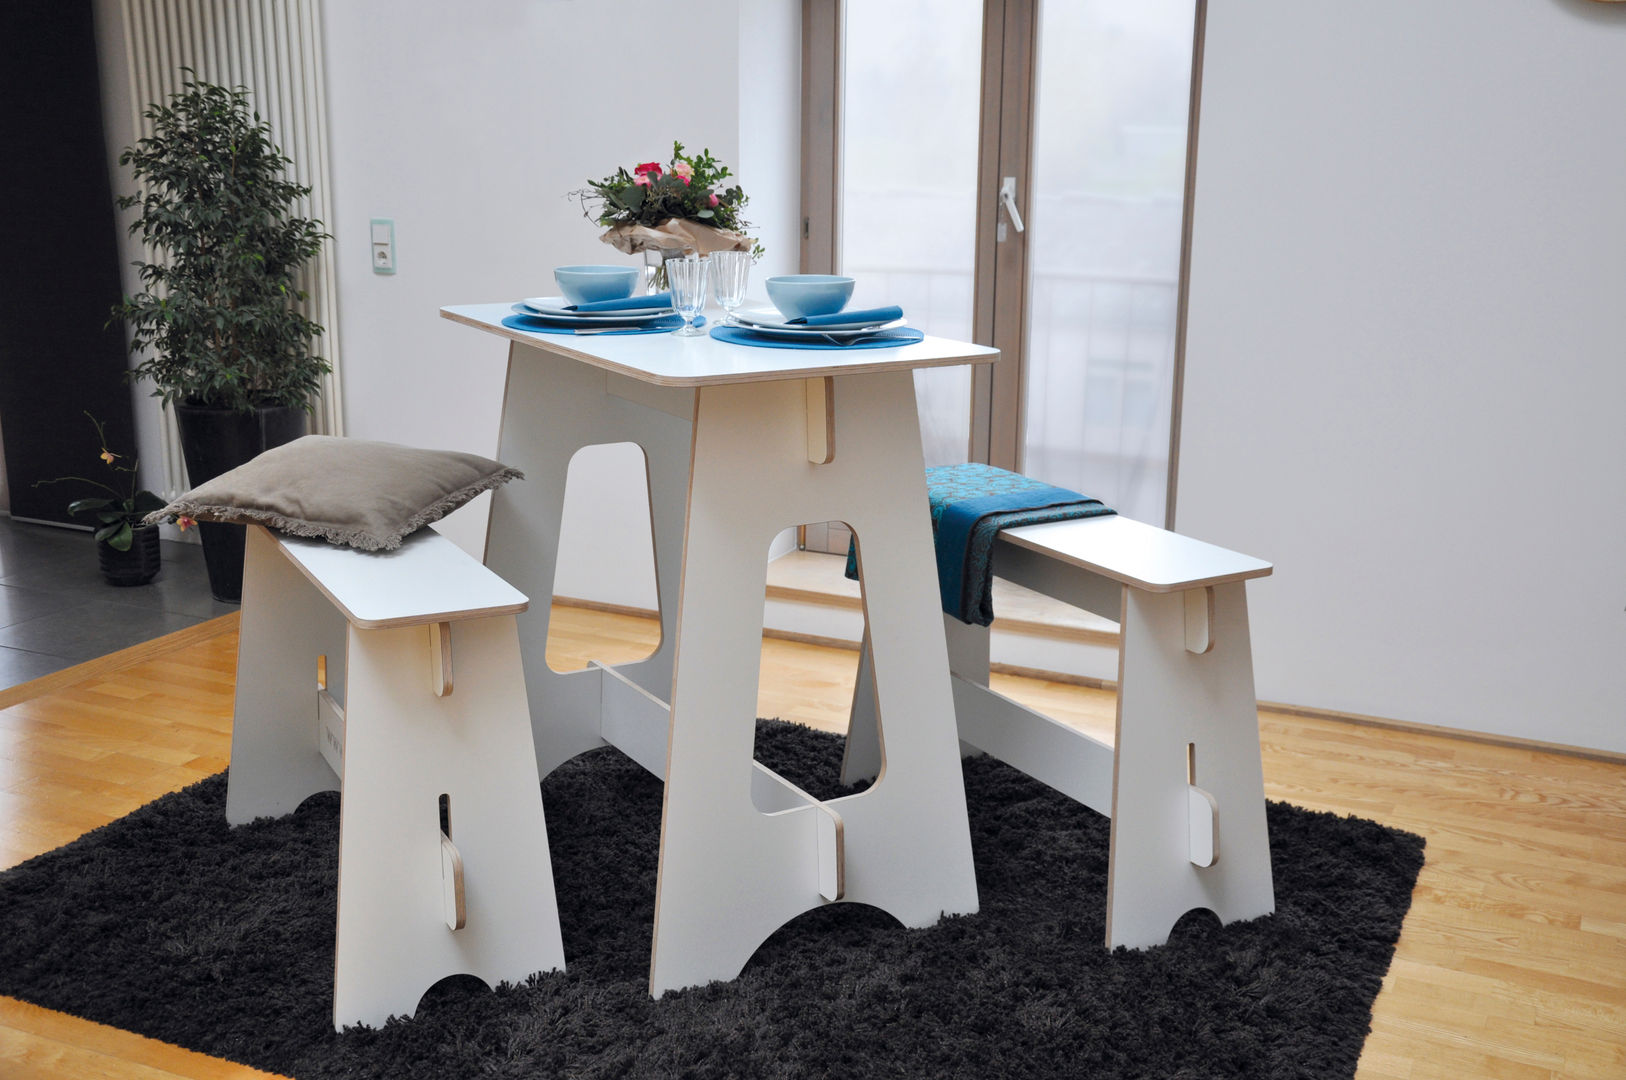 Steckmöbel Event-Tisch, das wunschmöbel das wunschmöbel غرفة السفرة Tables